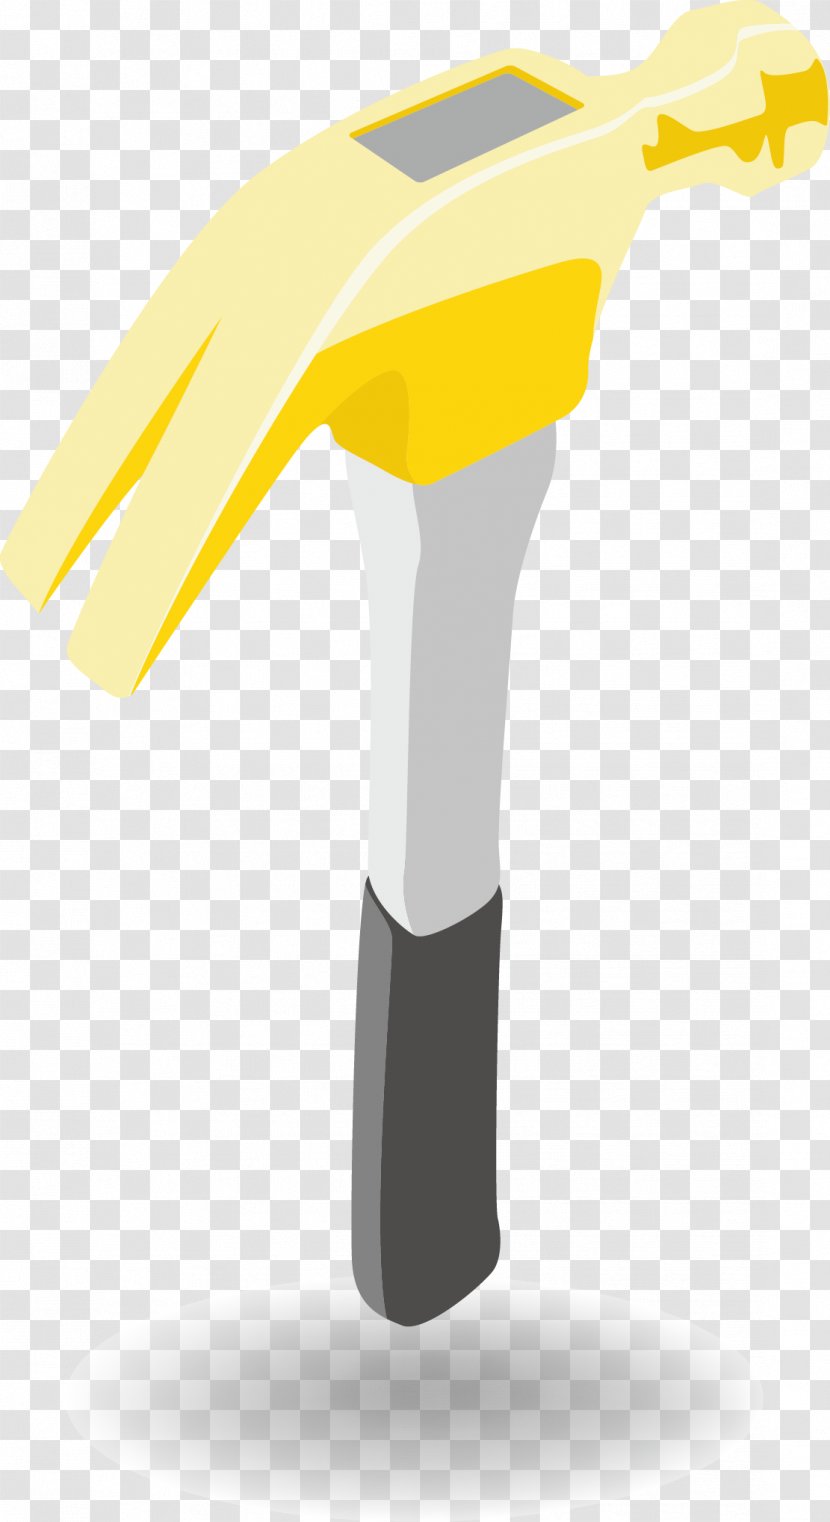 Sledgehammer Gavel Tool - Hammer - Color Material Transparent PNG